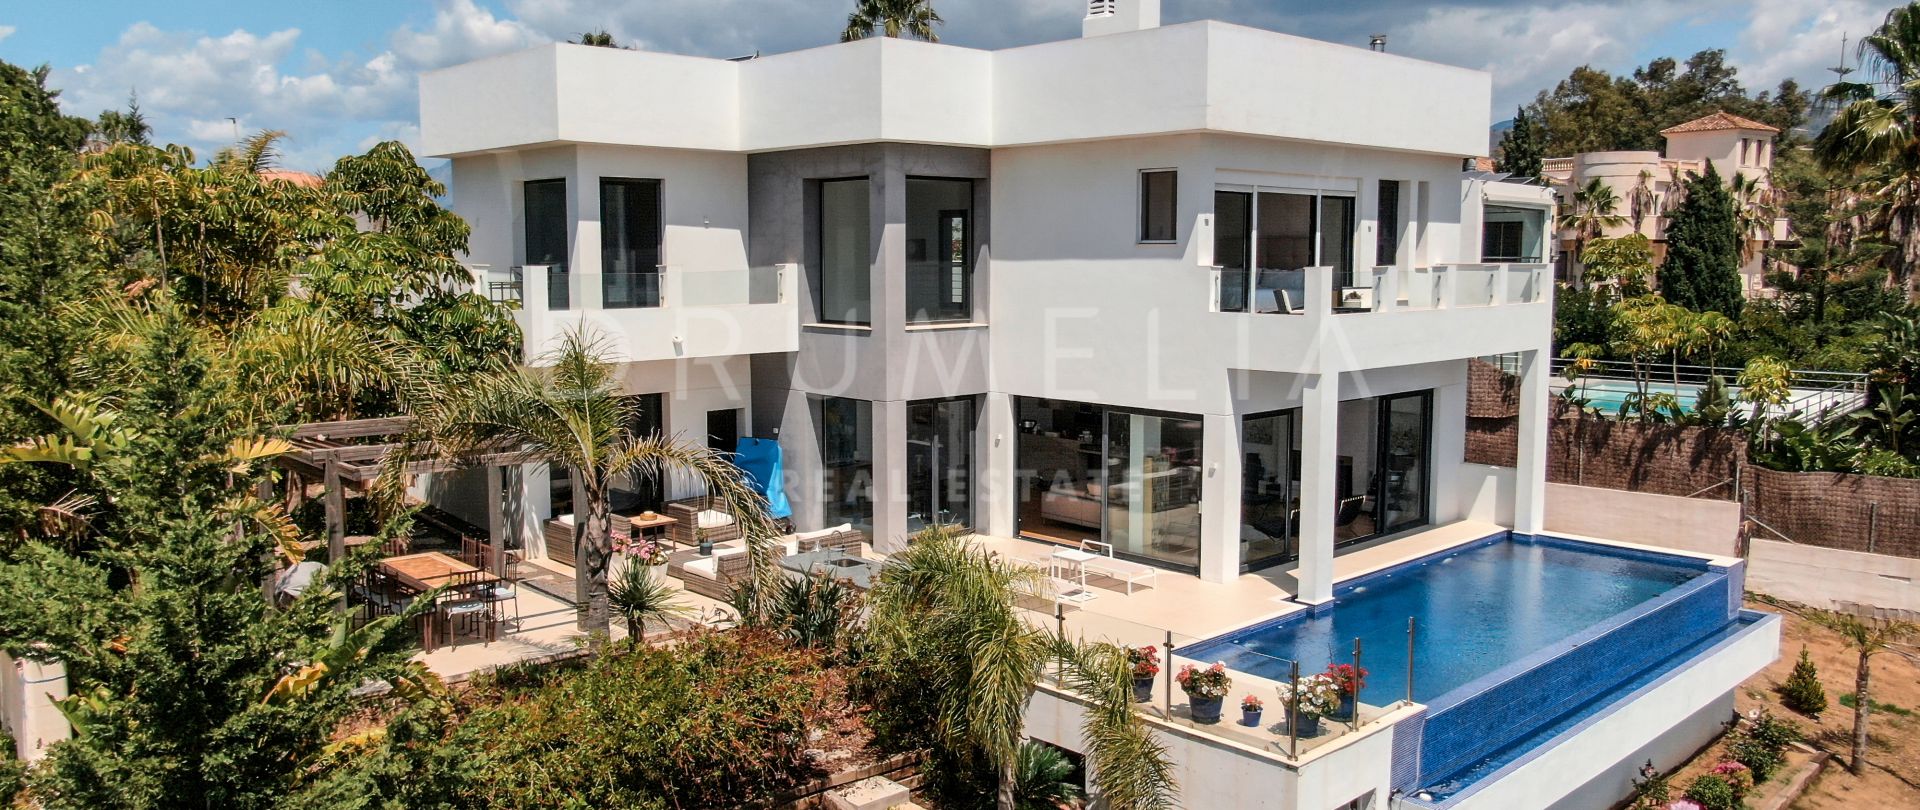 Fantastisk villa i moderne stil med panoramautsikt i vakre Elviria, Marbella.